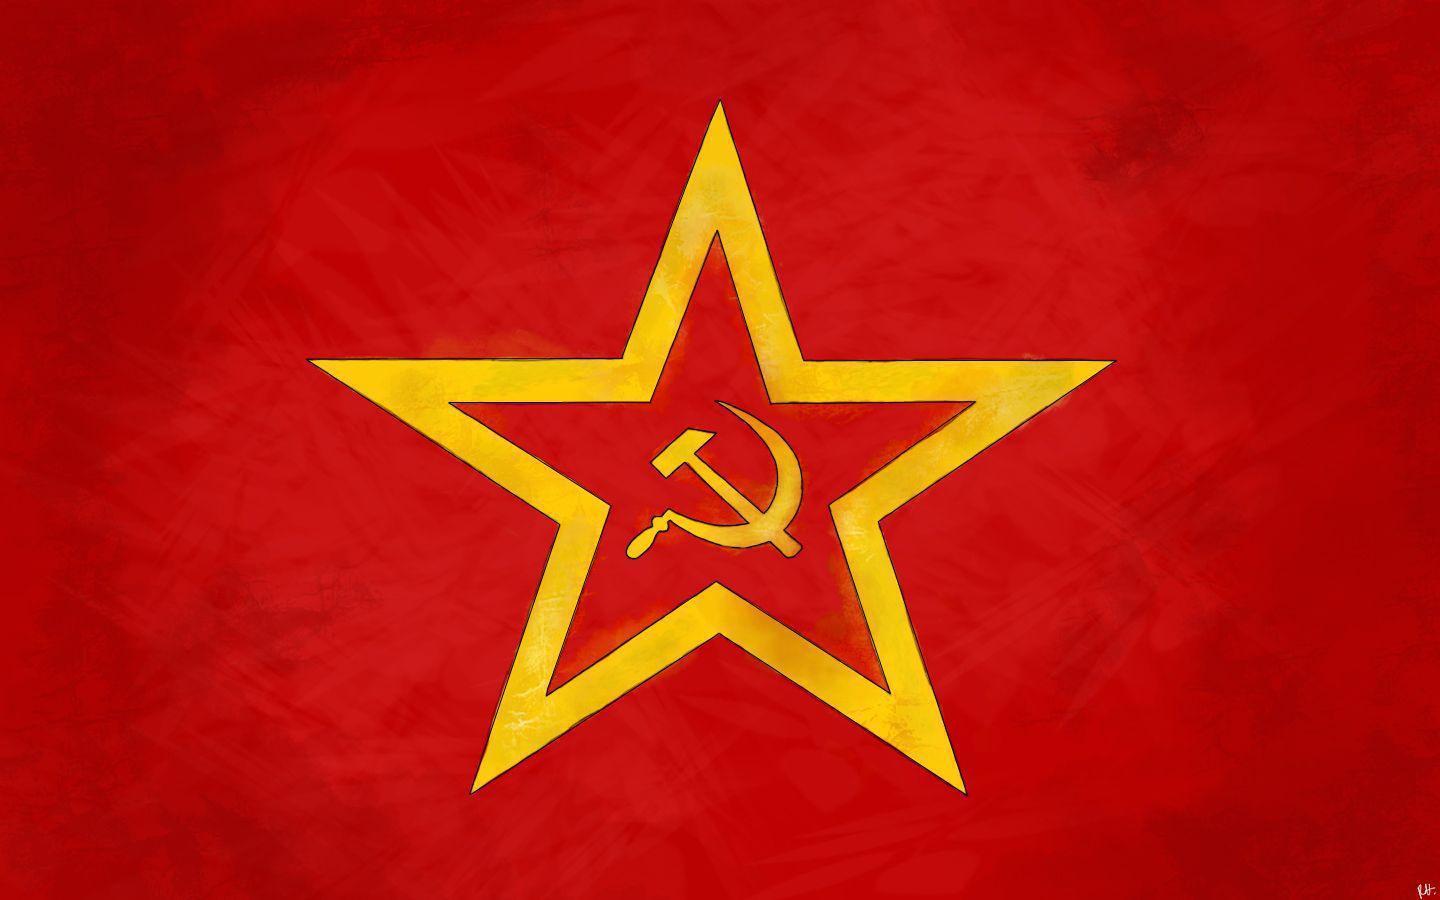 640x425px 73.88 KB Soviet Union